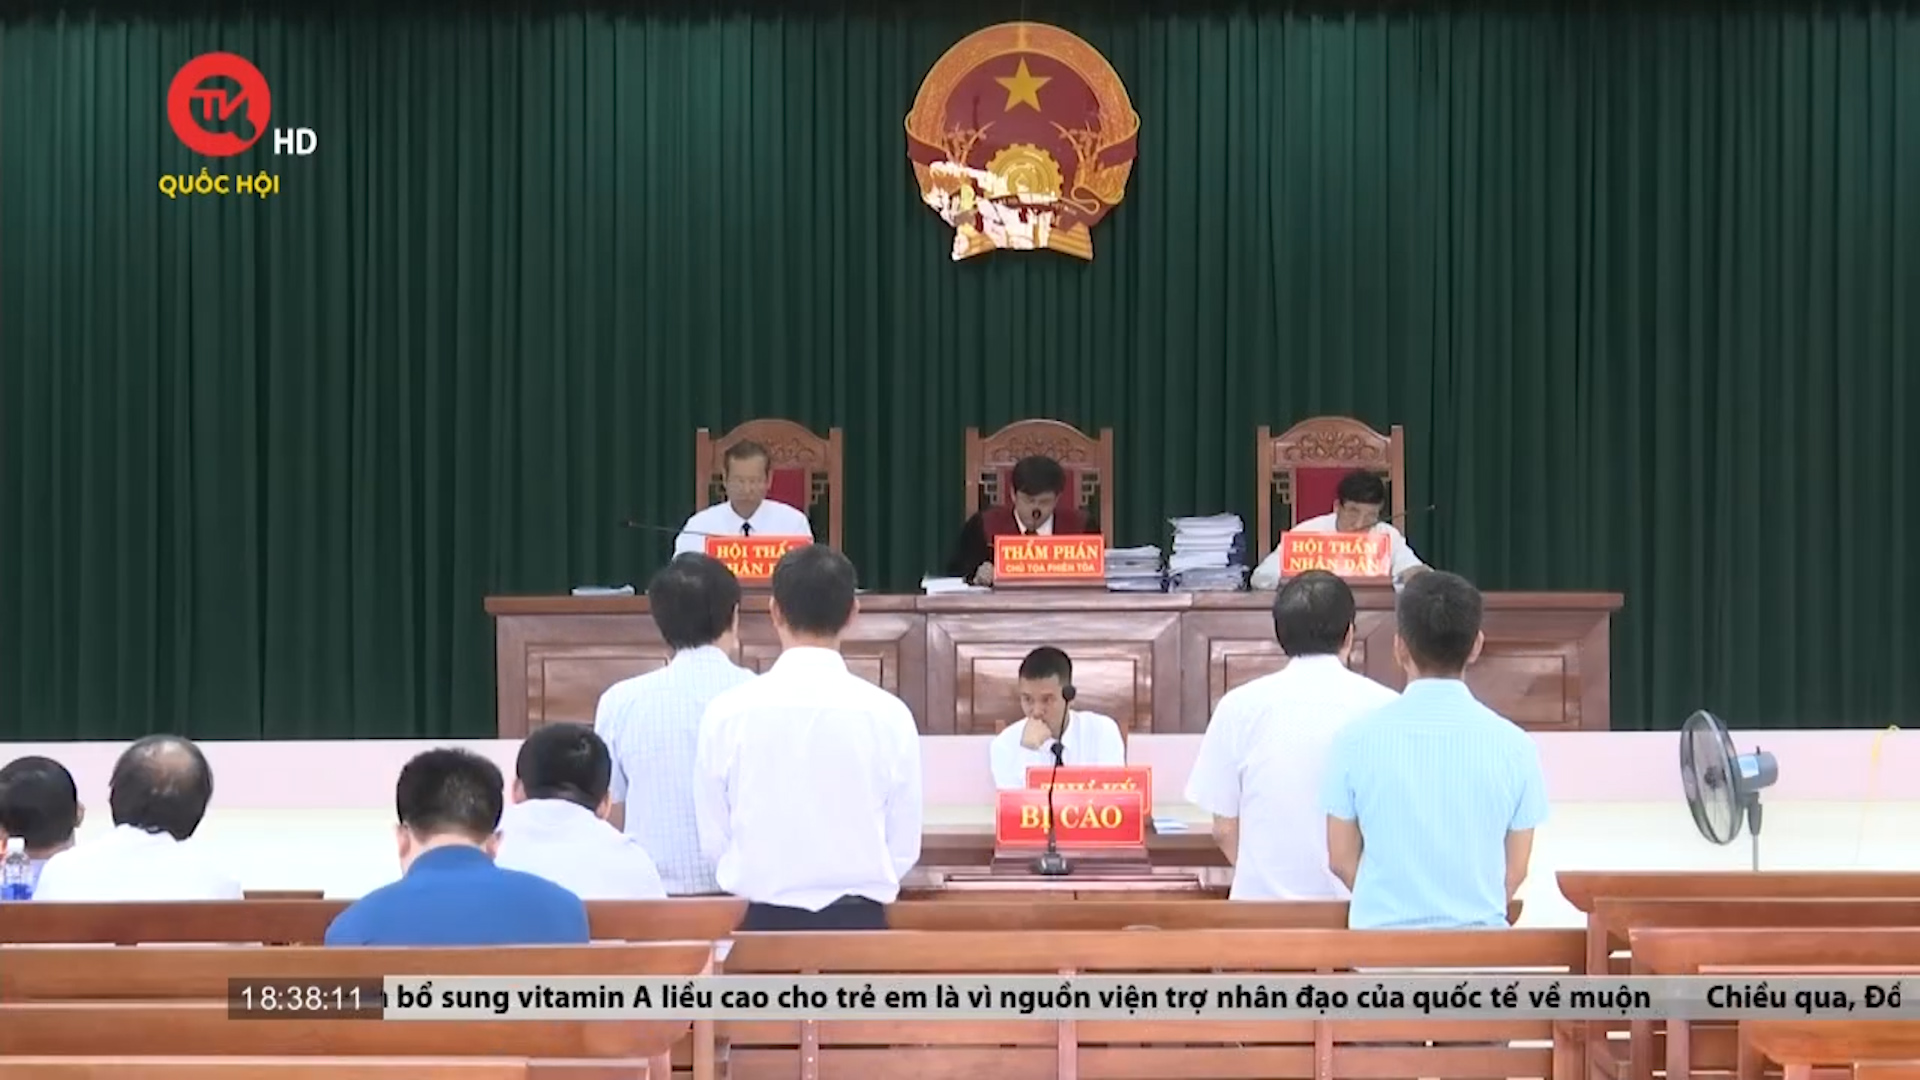 Vụ rà phá bom mìn tại Quảng Bình: Bị can đề nghị chỉ xử lý hành chính, không hình sự hoá vụ án